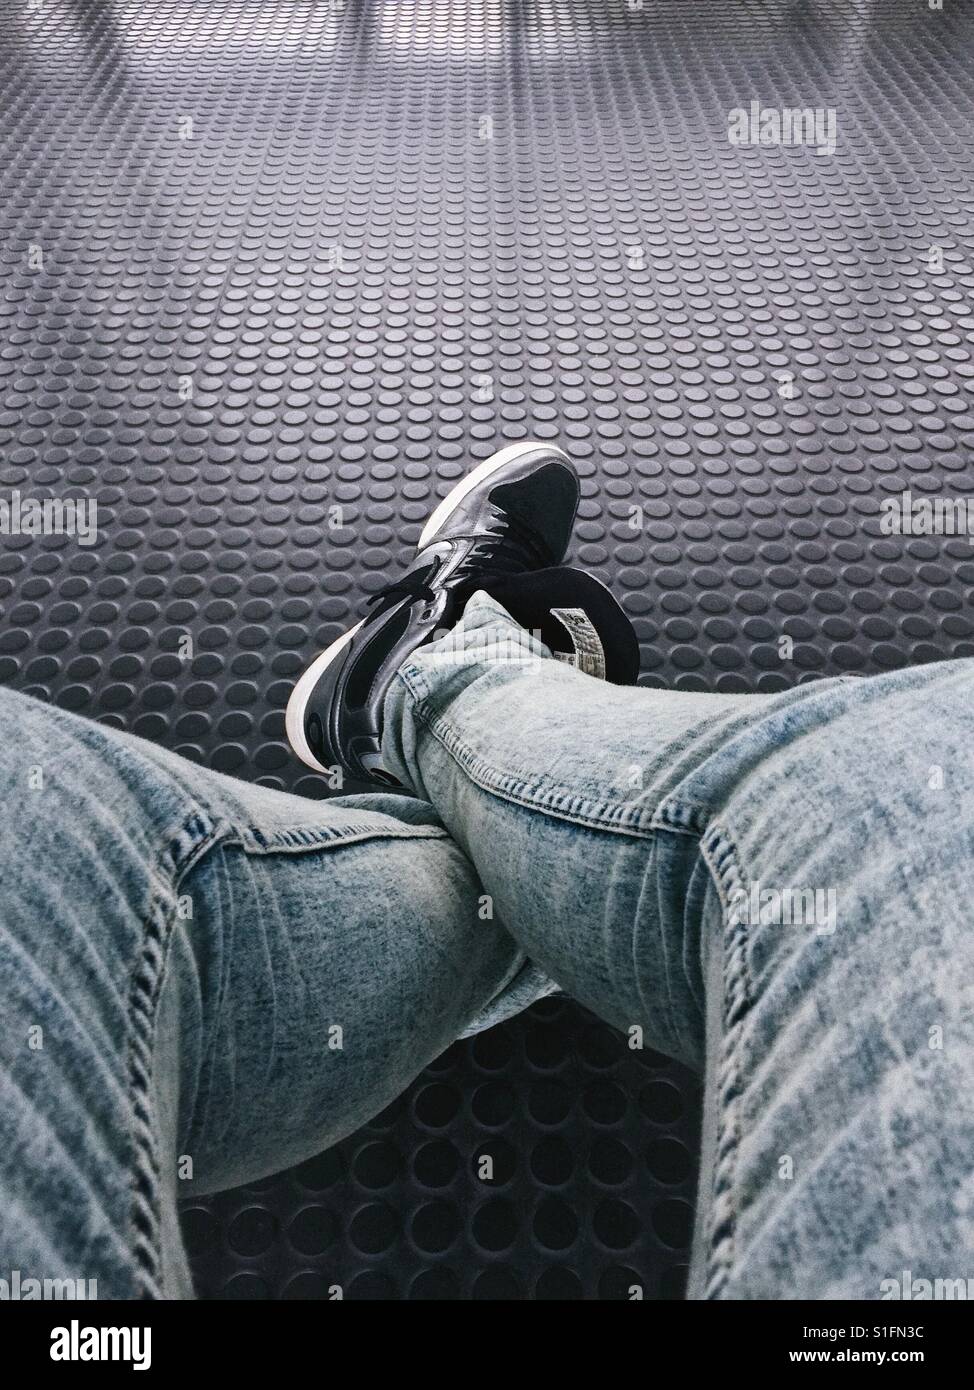 Punto di vista personale, visto attraverso gli occhi di un uomo che guarda i suoi piedi mentre si siede e attende. Indossa un paio di jeans e scarpe da ginnastica. Foto Stock